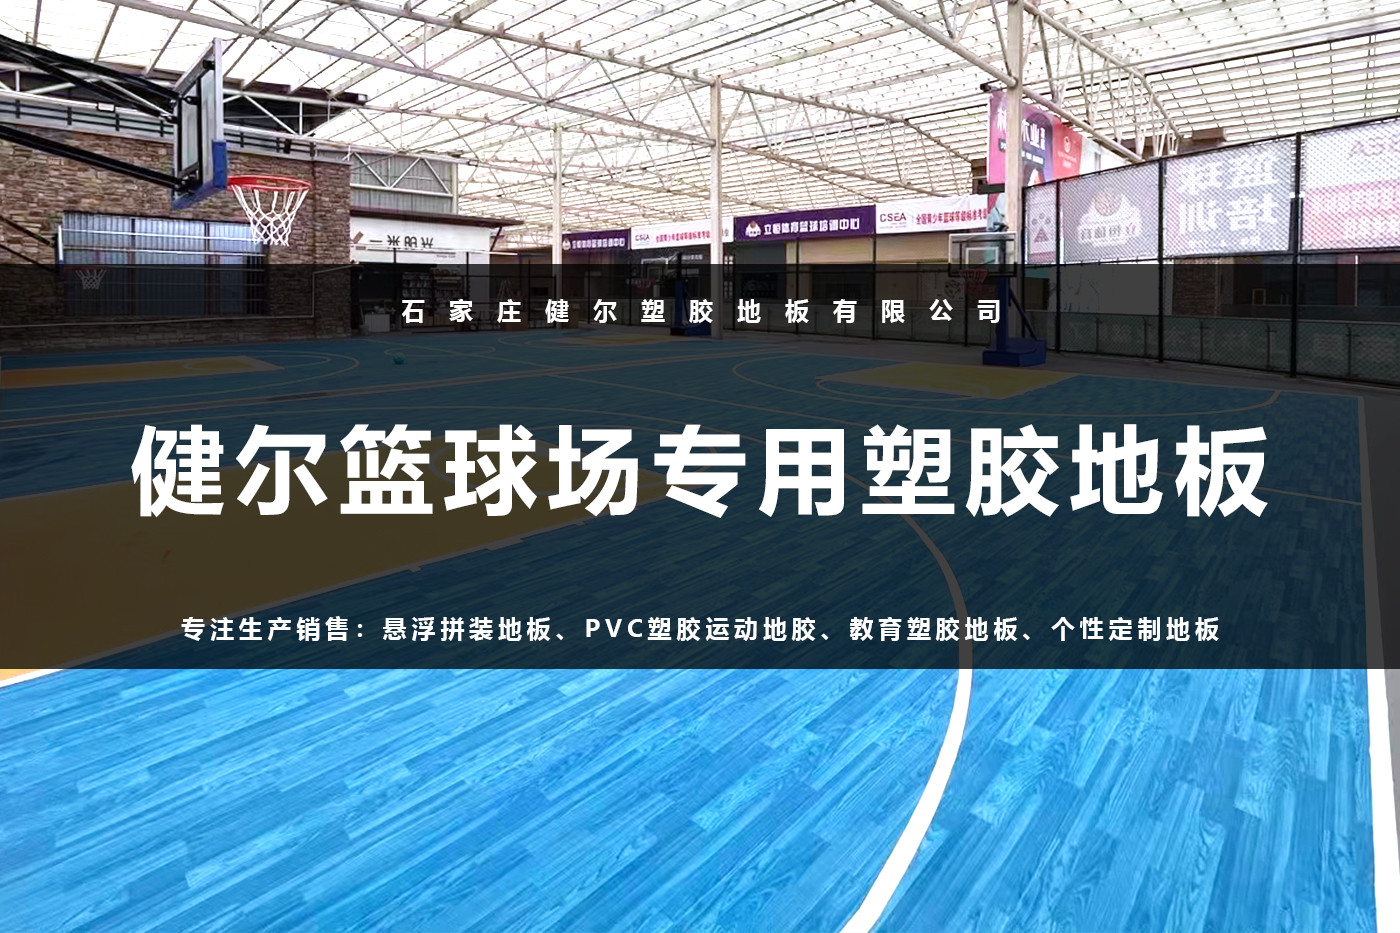 健尔篮球场专用塑胶地板.jpg